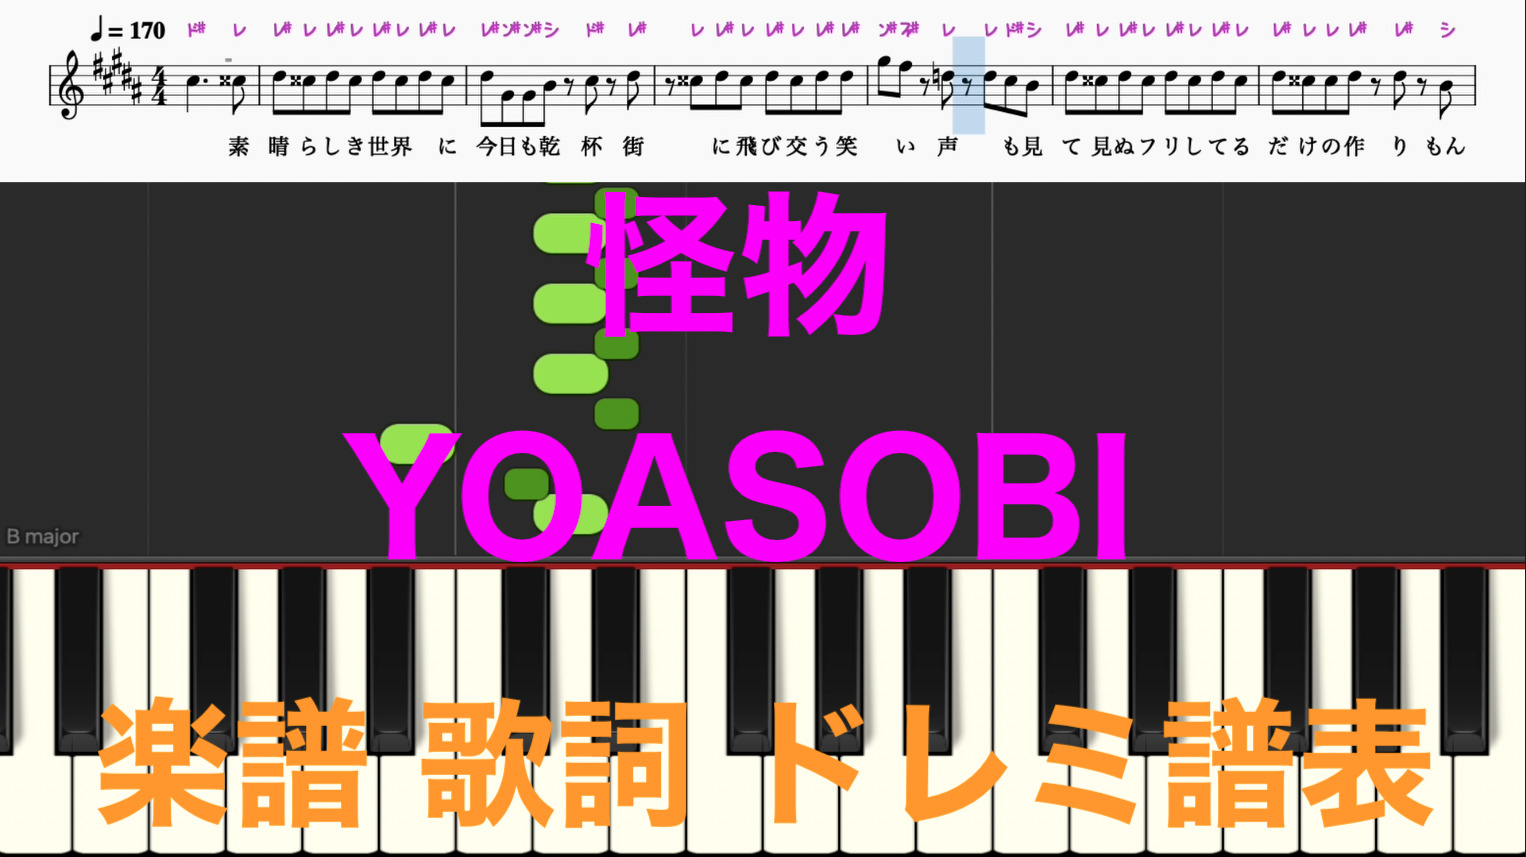 怪物 Yoasobi ピアノ楽譜 歌詞 ドレミ音符ふりがな読み方譜表付き ピアノ オカリナ サックス トランペット フルート クラリネット演奏 カラオケに最適 ドレミファ演奏楽譜のサイト 初心者でも簡単 ピアノ楽譜 無料